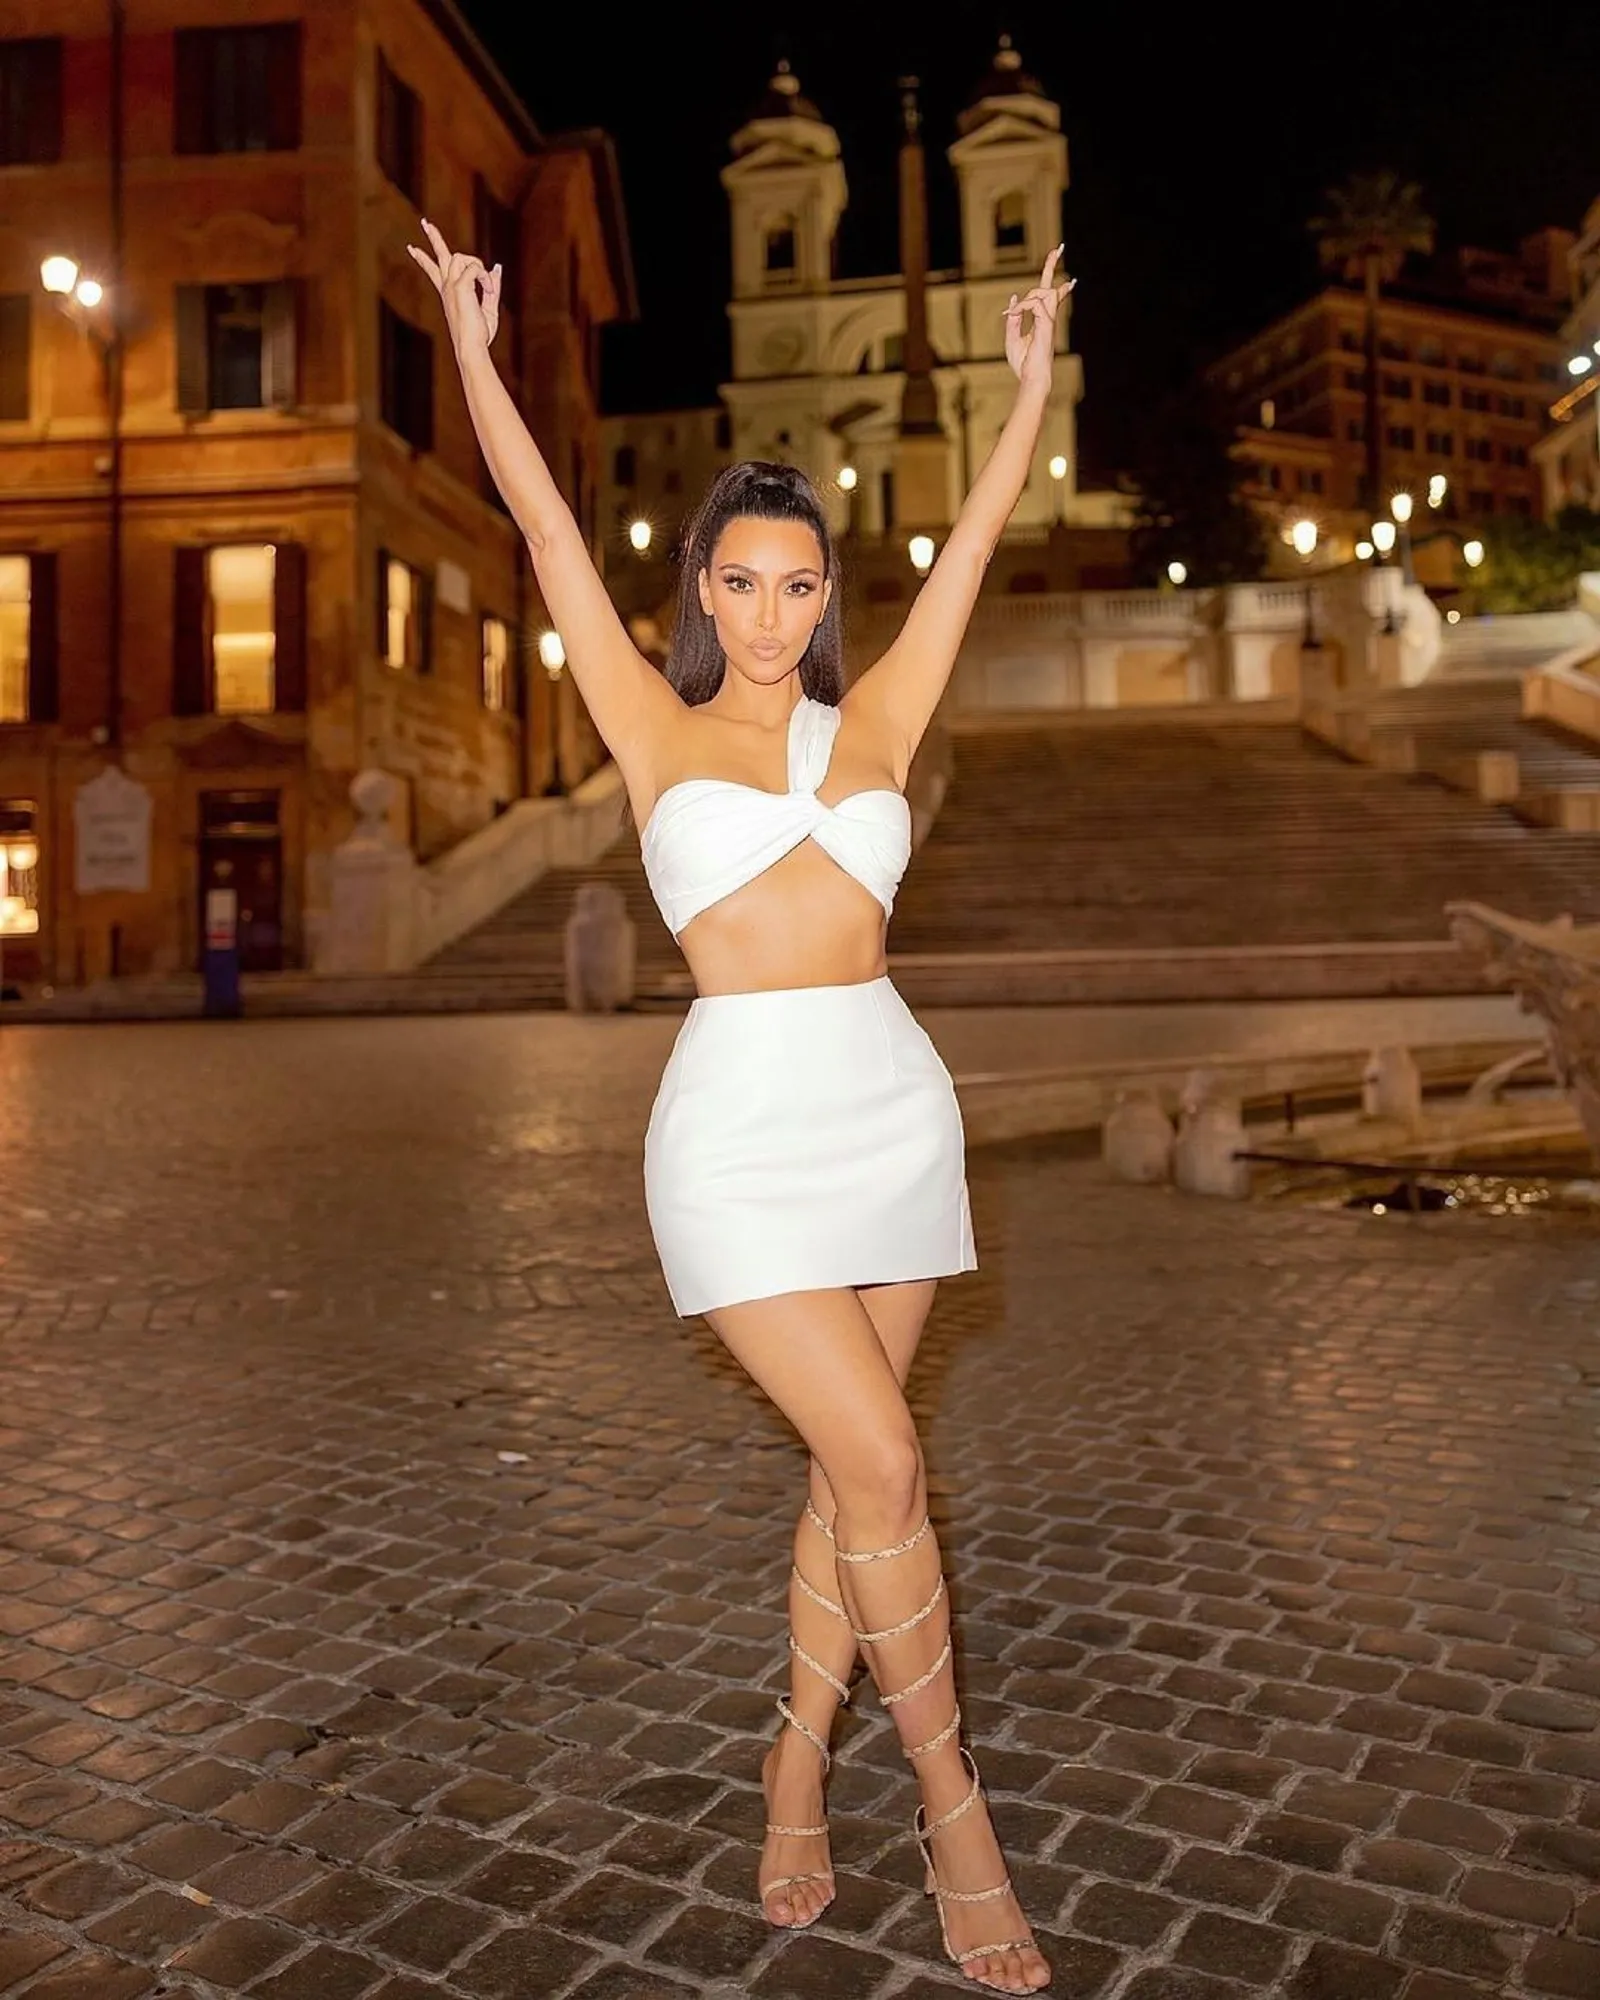 Pose Angkat Tangan, Baju Kim Kardashian Makin Kontroversial!